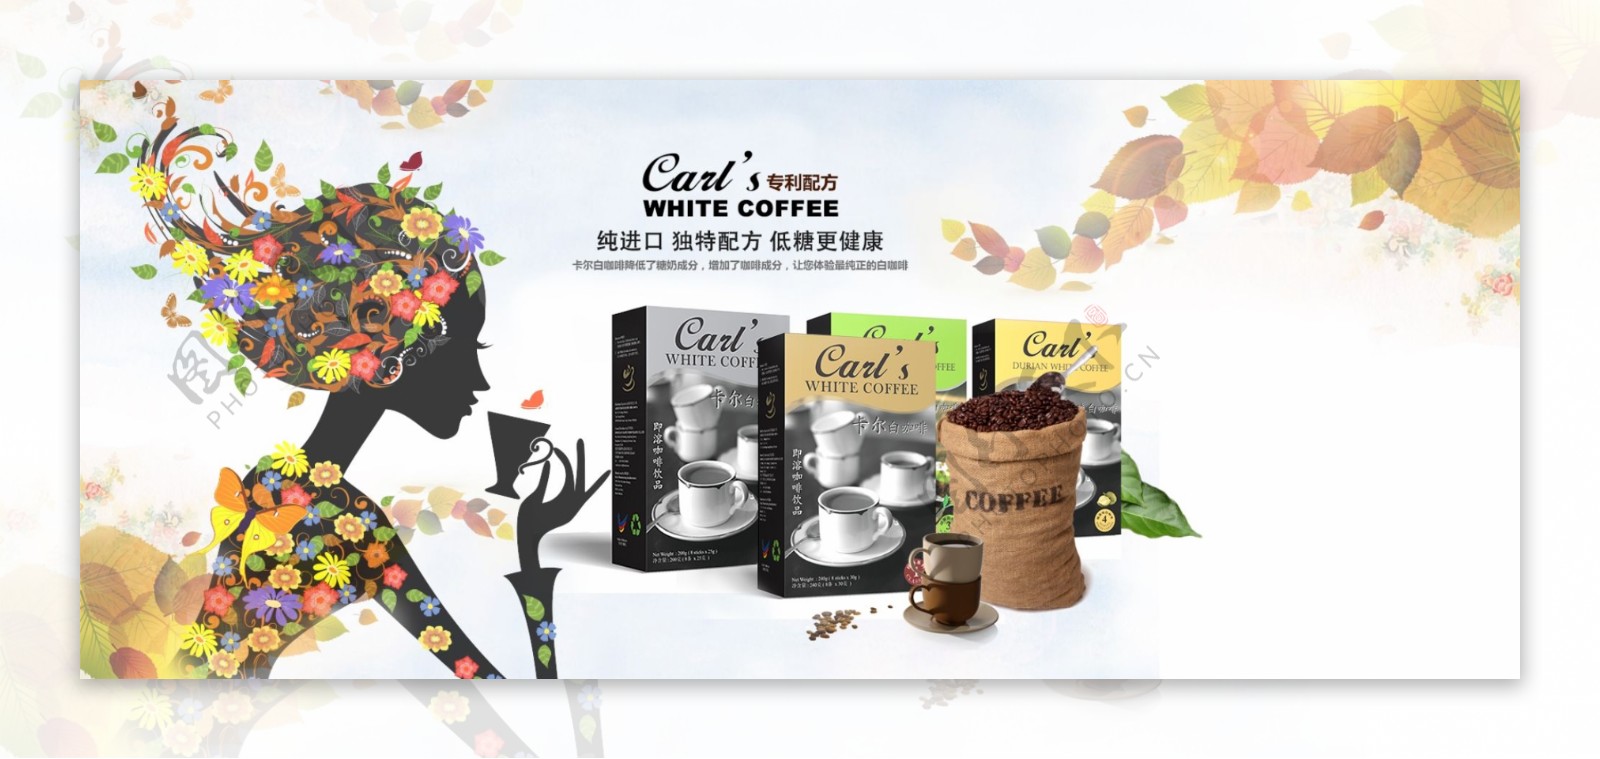 卡尔白咖啡淘宝海报设计图插画素材淘宝素材